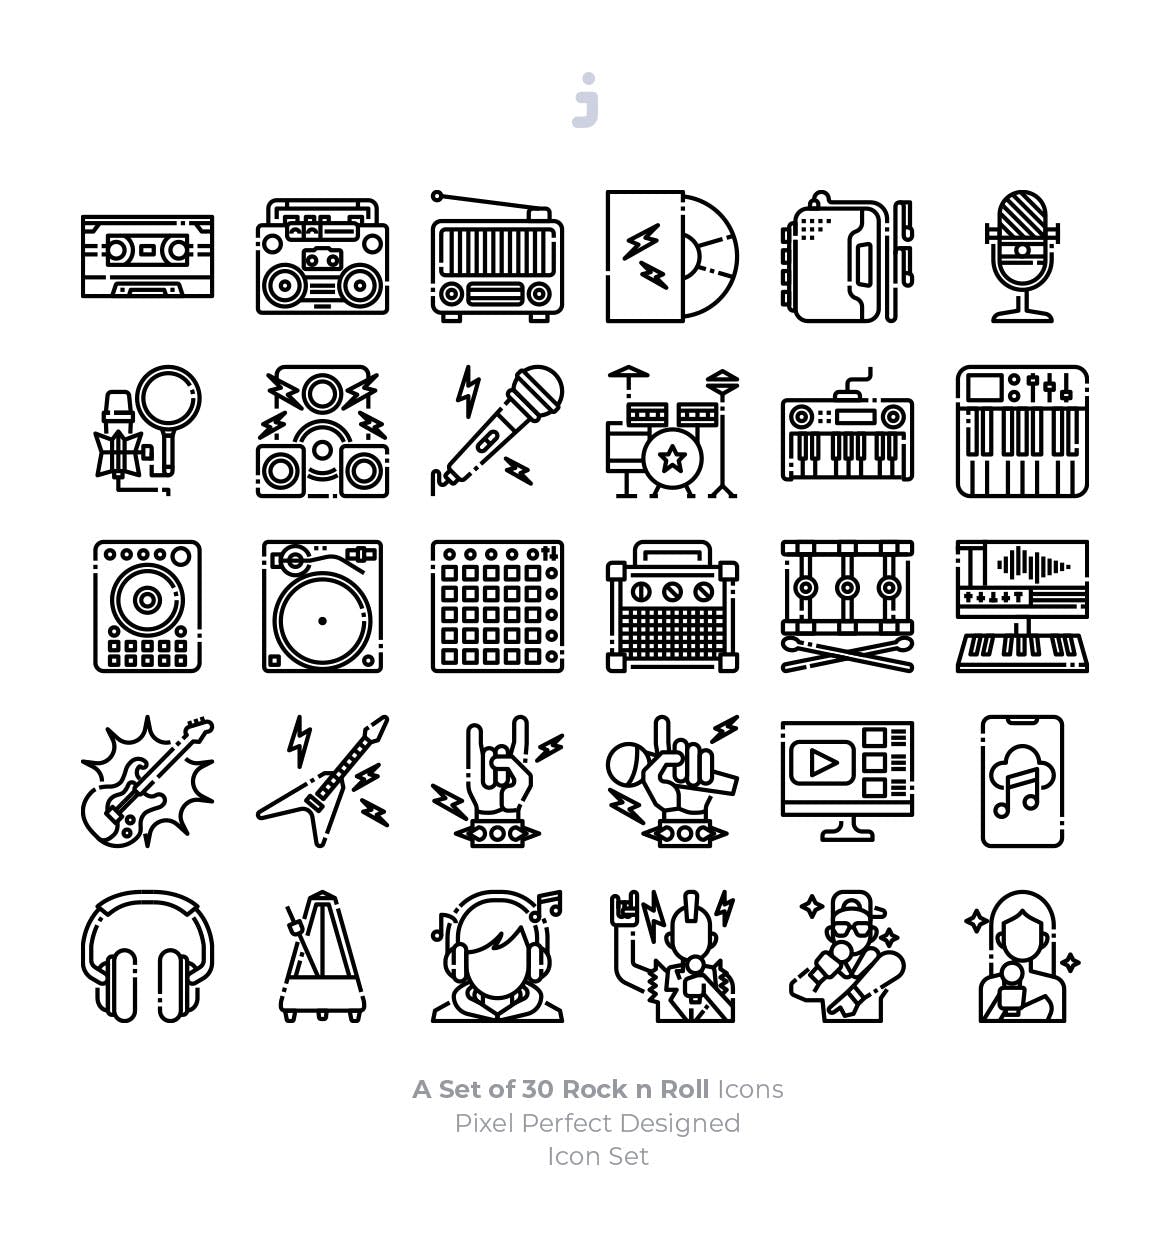 30枚摇滚音乐矢量图标素材 30 Rock n Roll Icons插图(2)